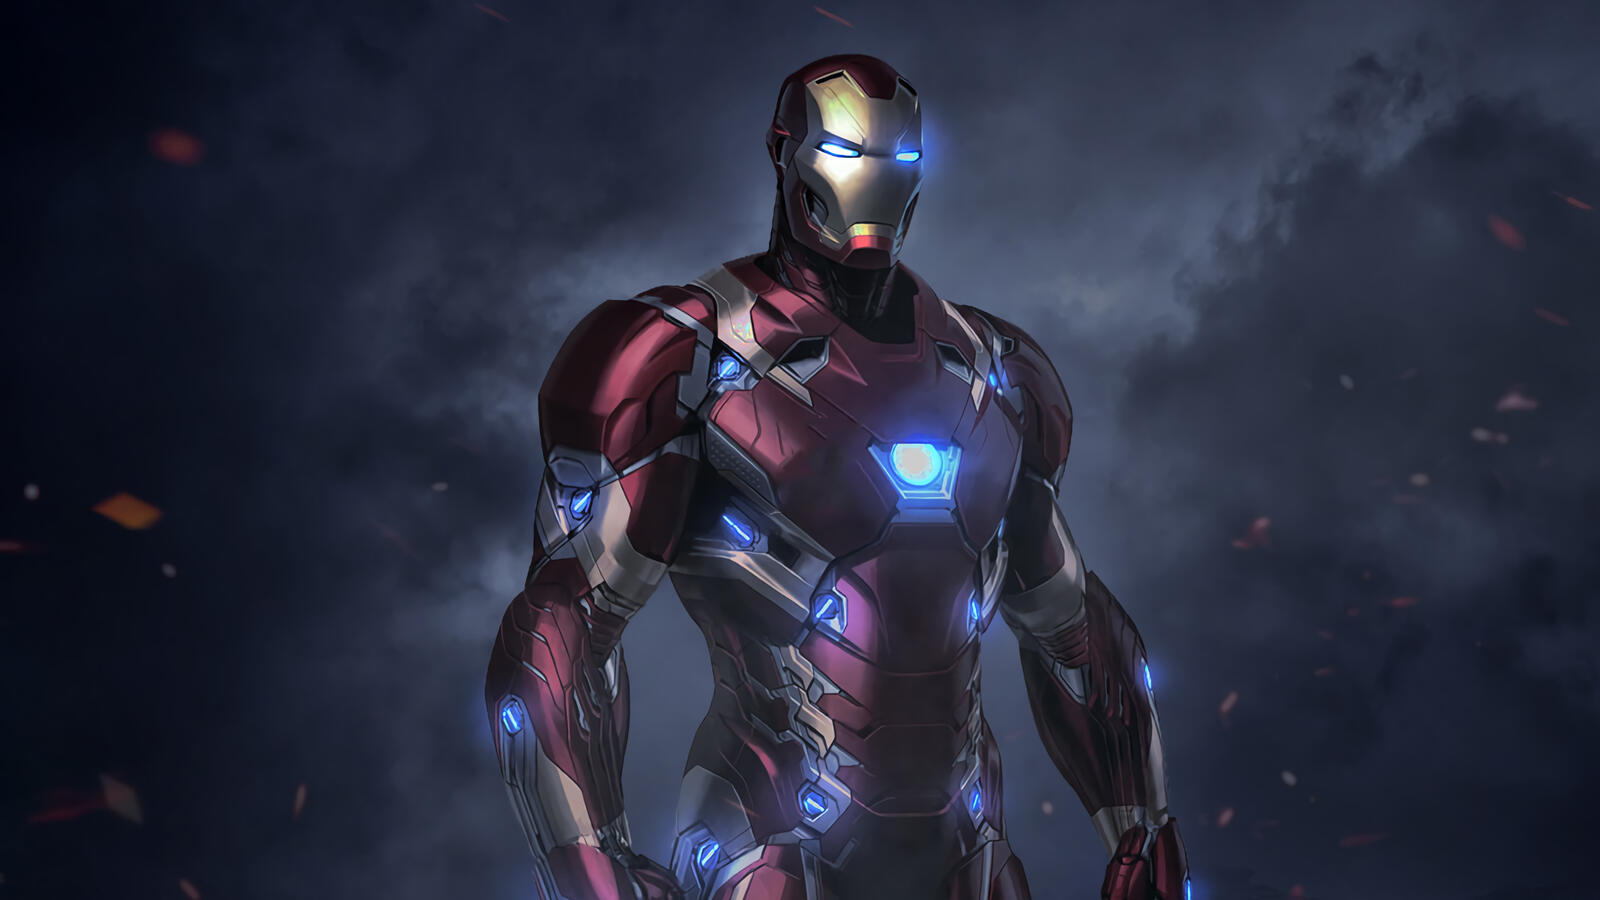 Wallpapers rendering Iron Man figure on the desktop